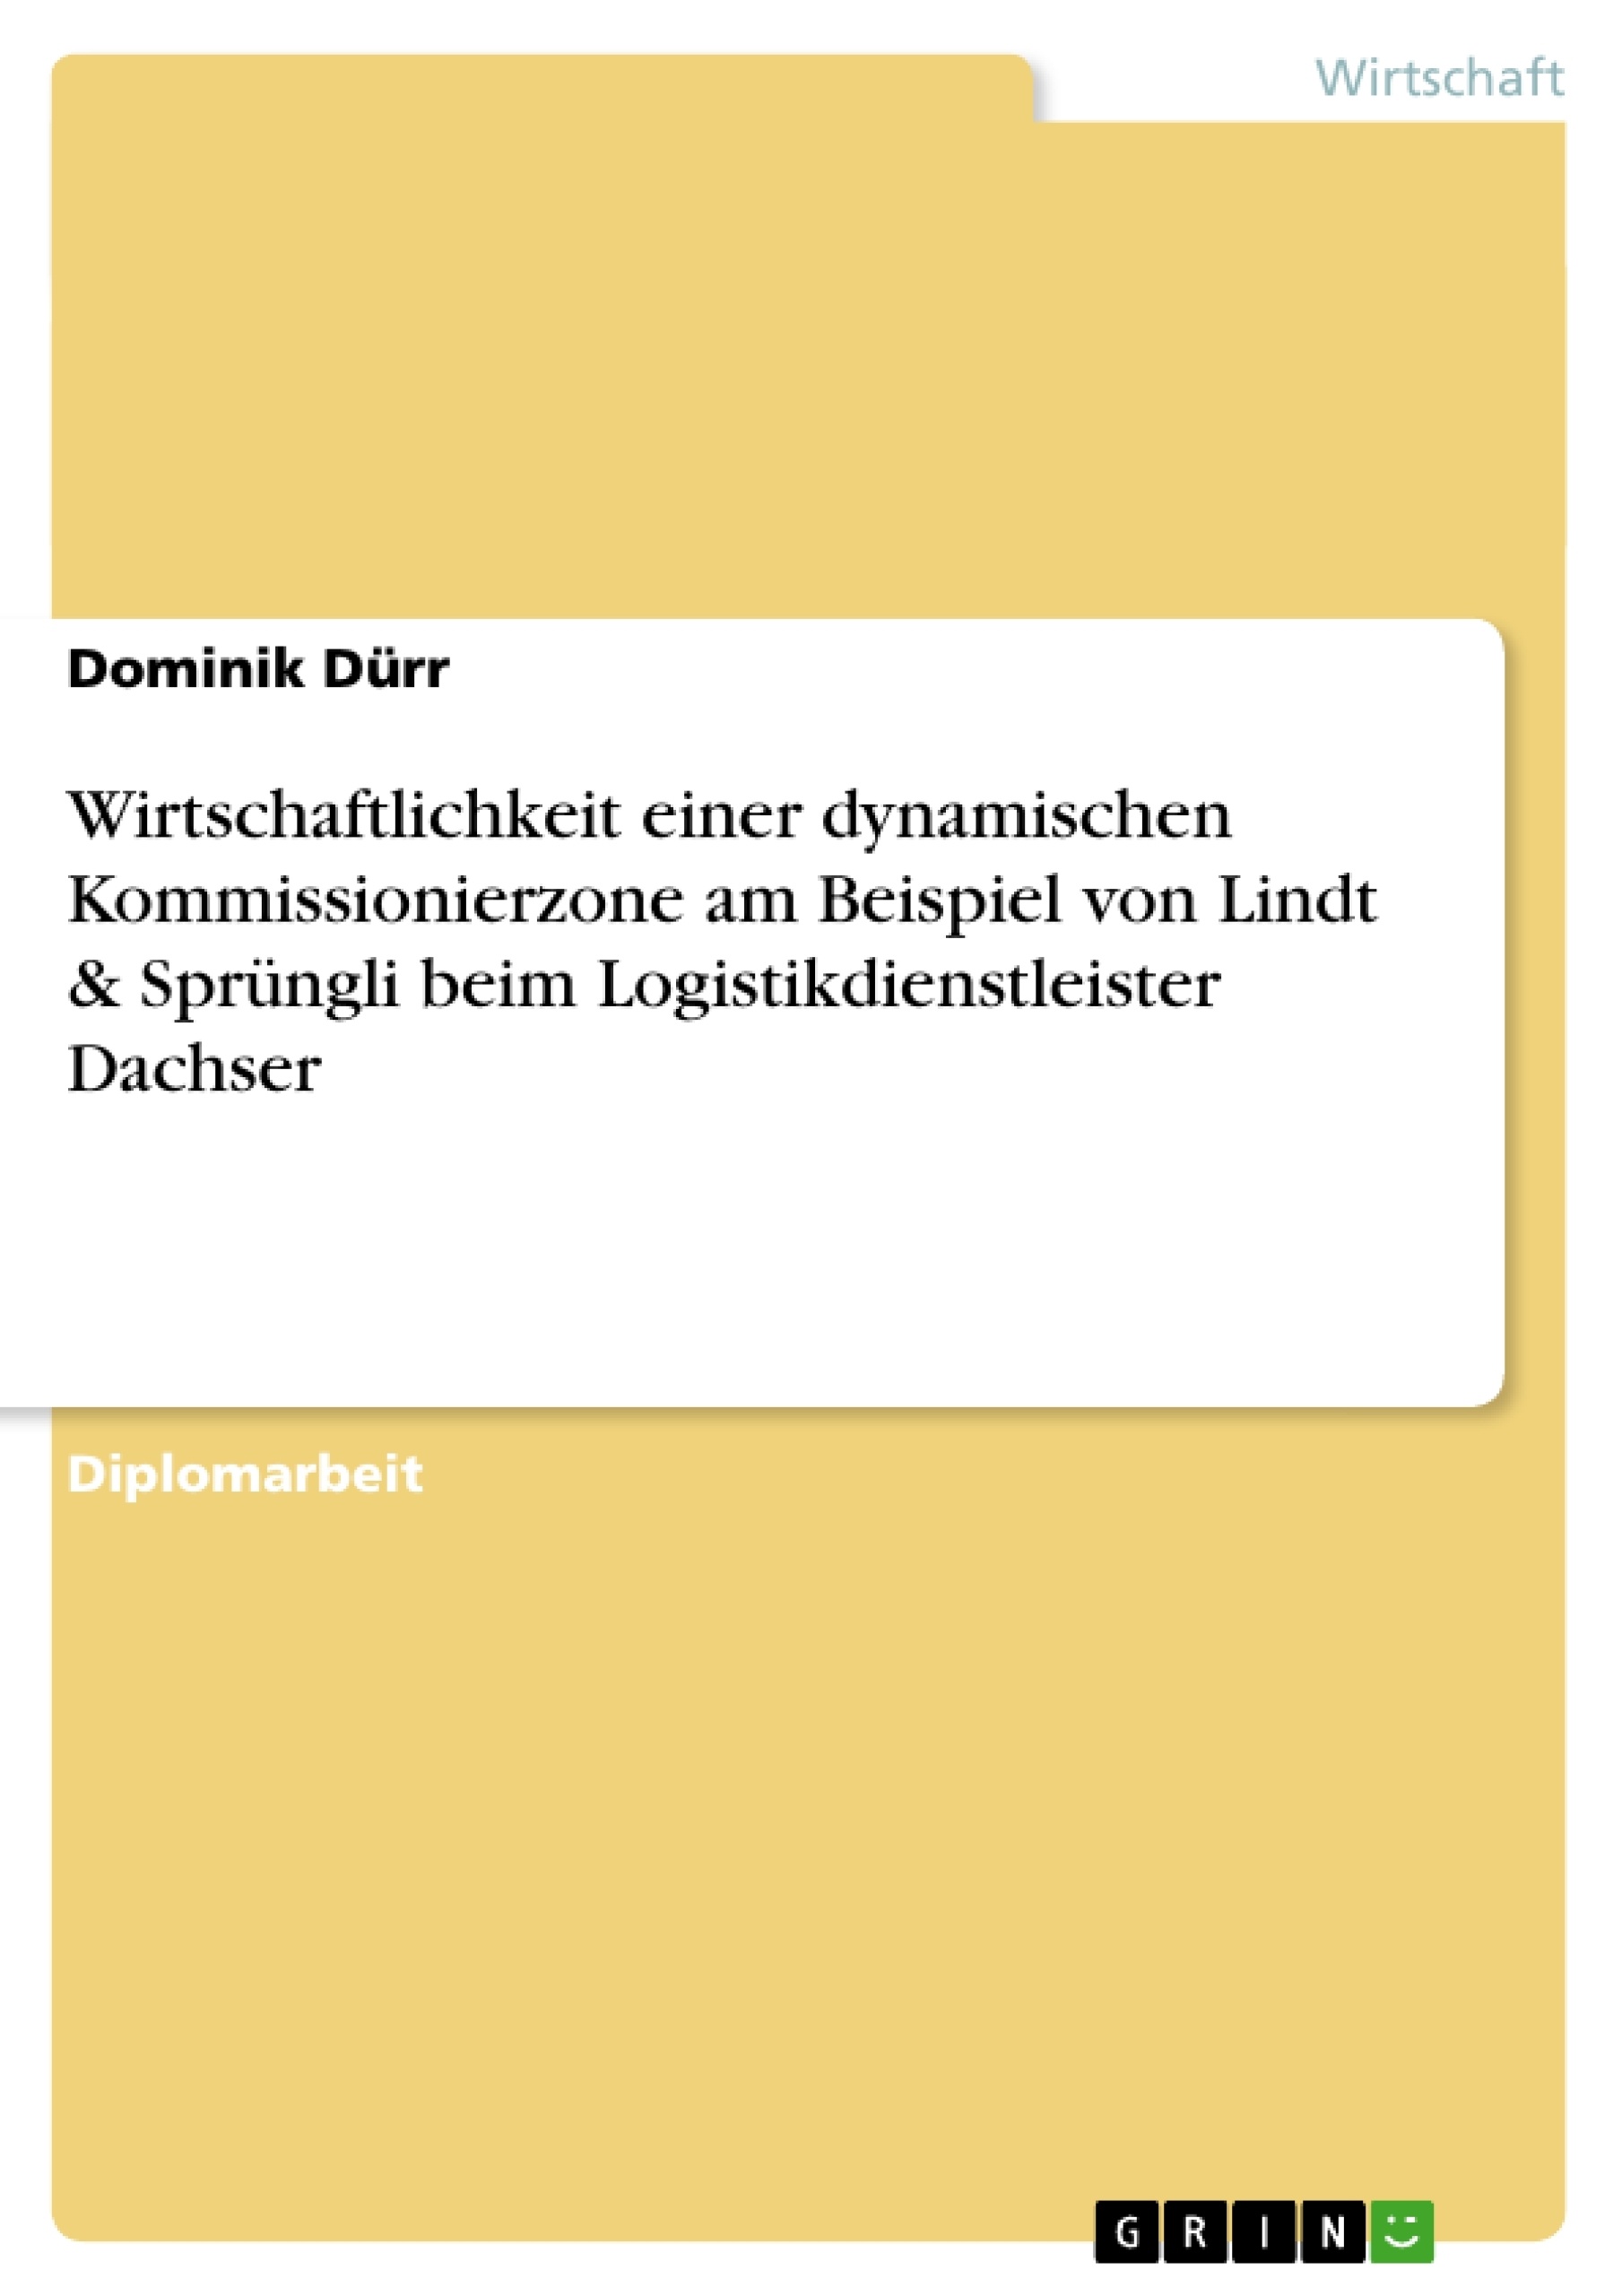 Title: Wirtschaftlichkeit einer dynamischen Kommissionierzone am Beispiel von Lindt & Sprüngli beim Logistikdienstleister Dachser